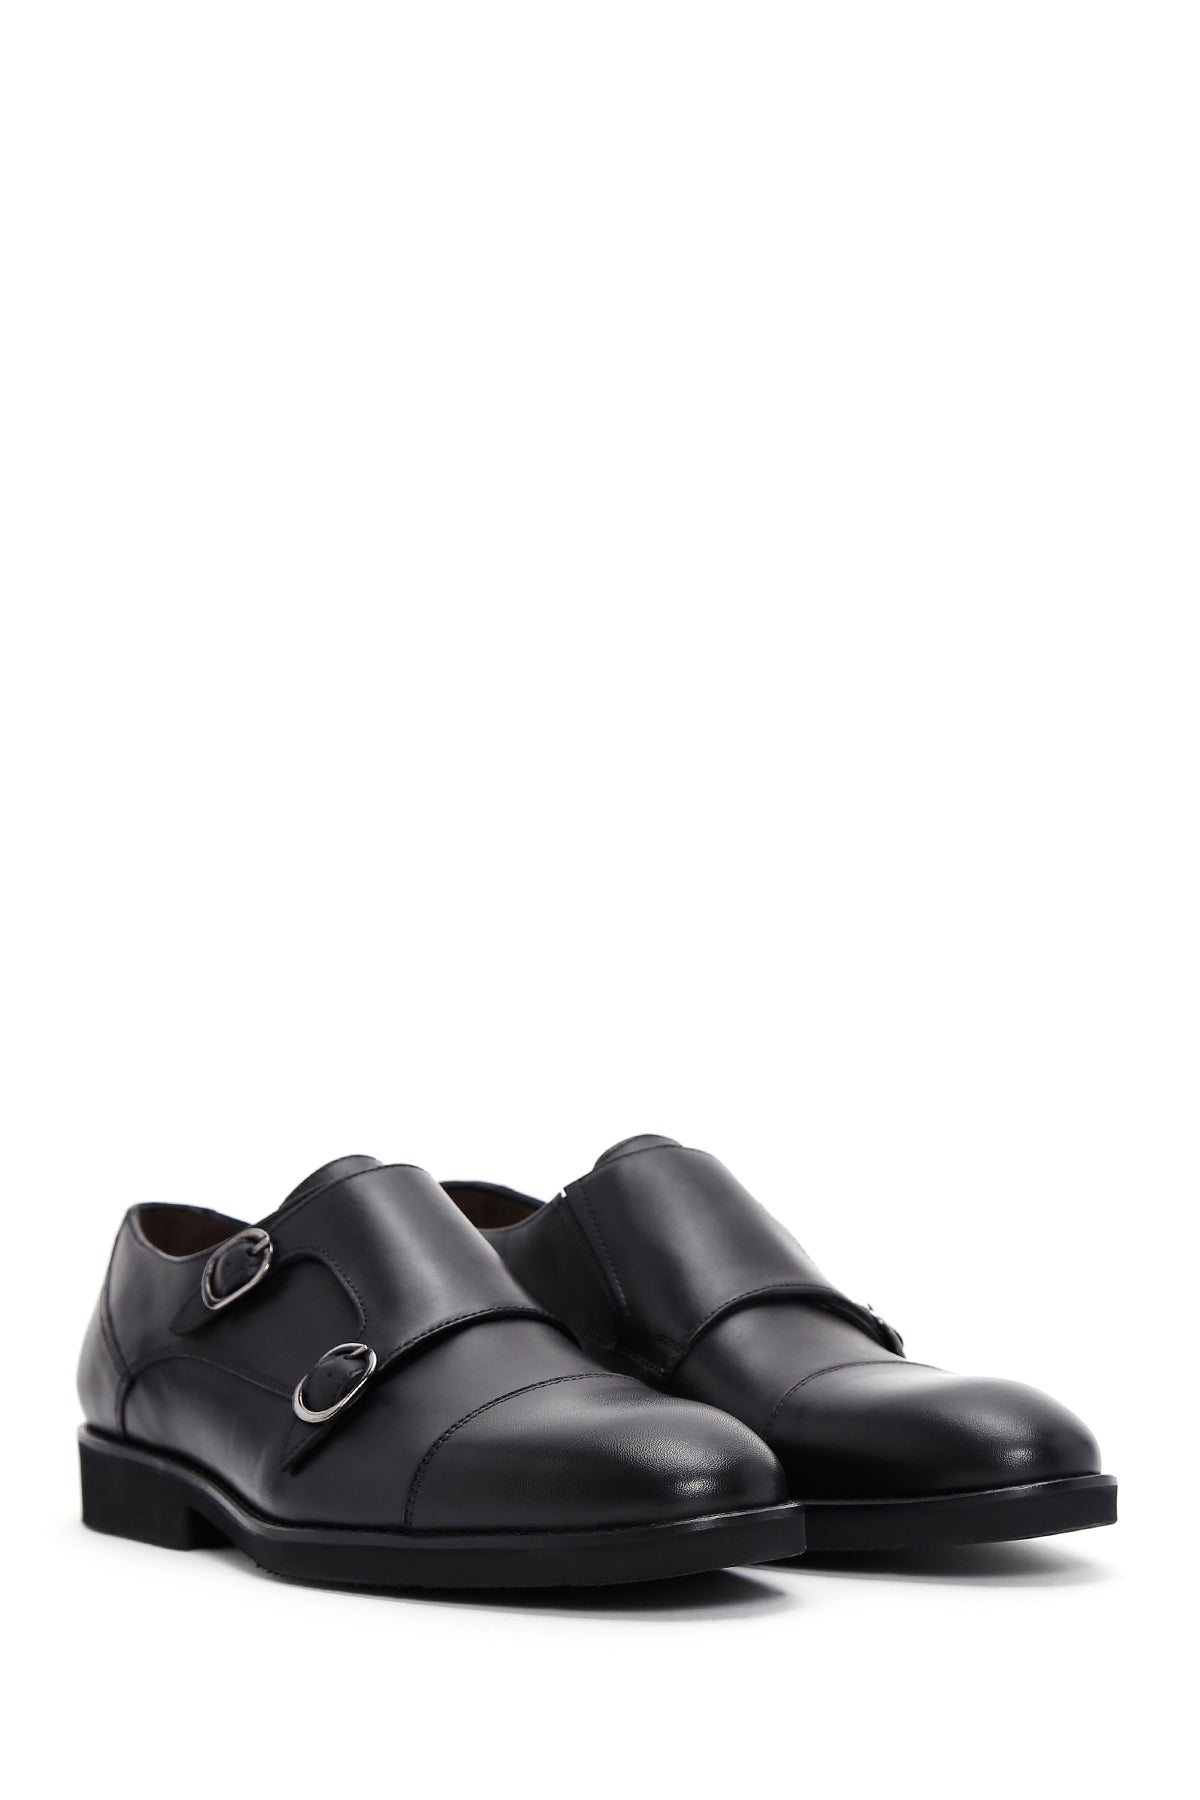 Erkek Siyah Deri Çift Tokalı Klasik Ayakkabı